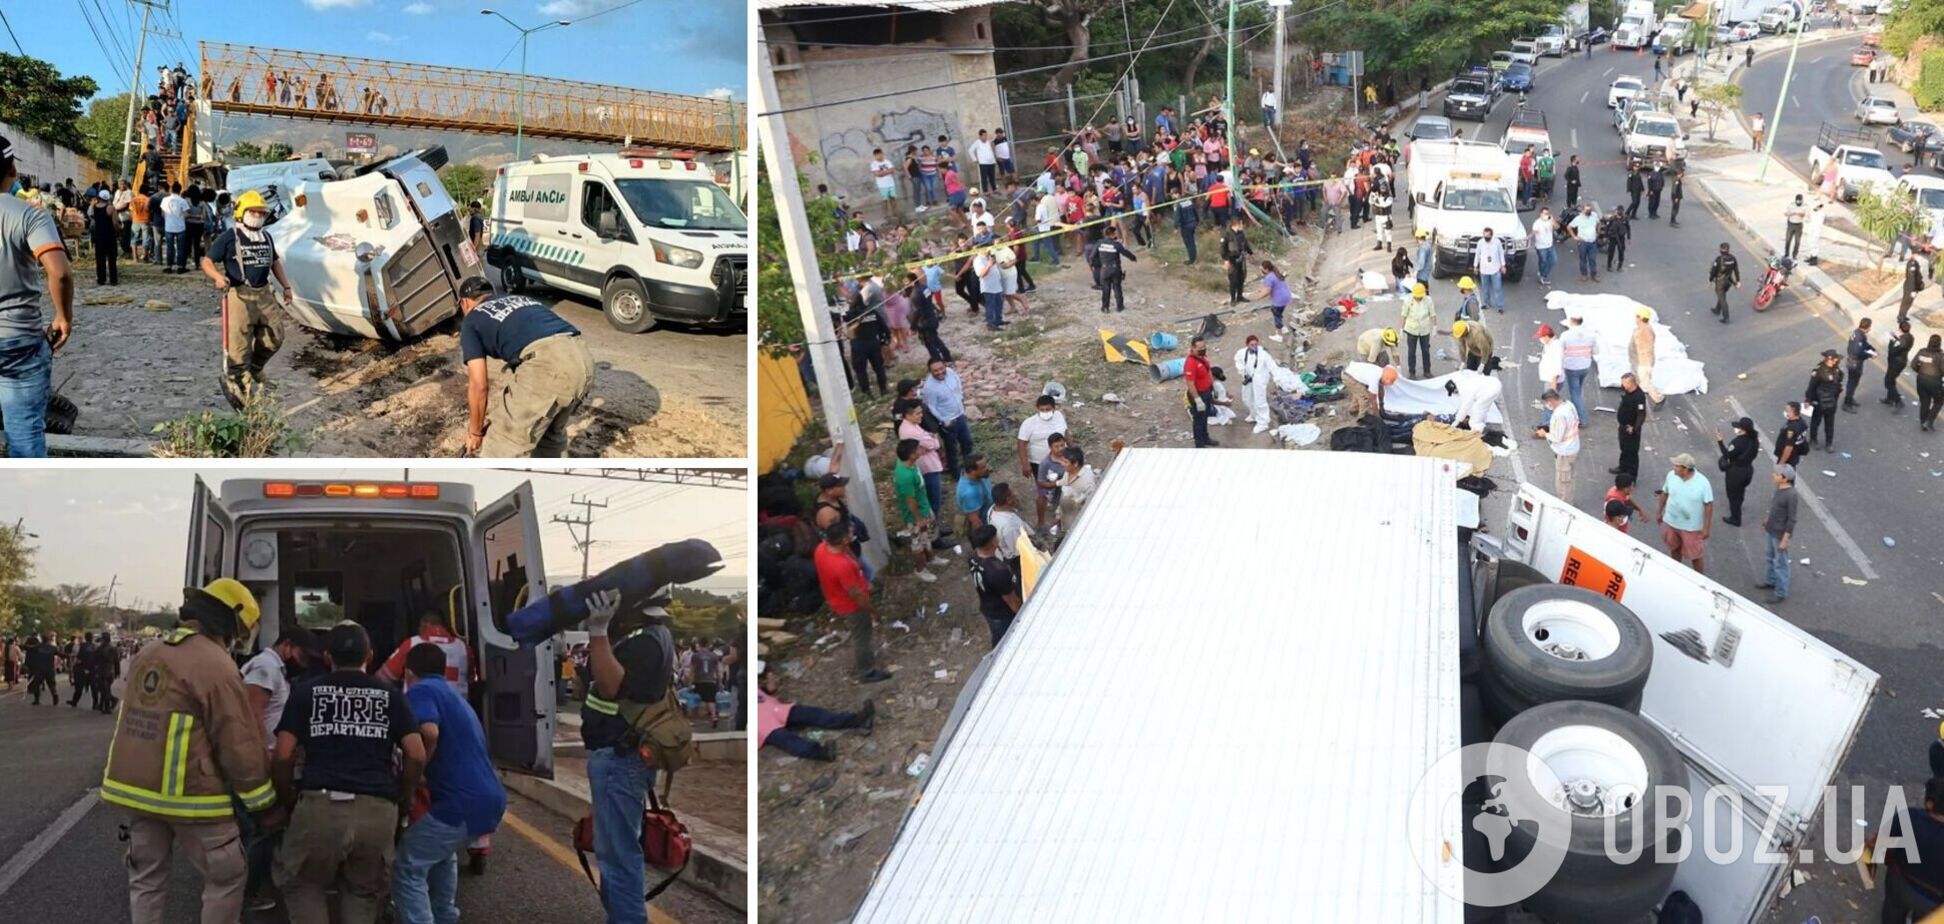 У Мексиці в ДТП з мігрантами загинули 53 особи й десятки постраждали. Фото і відео 18+